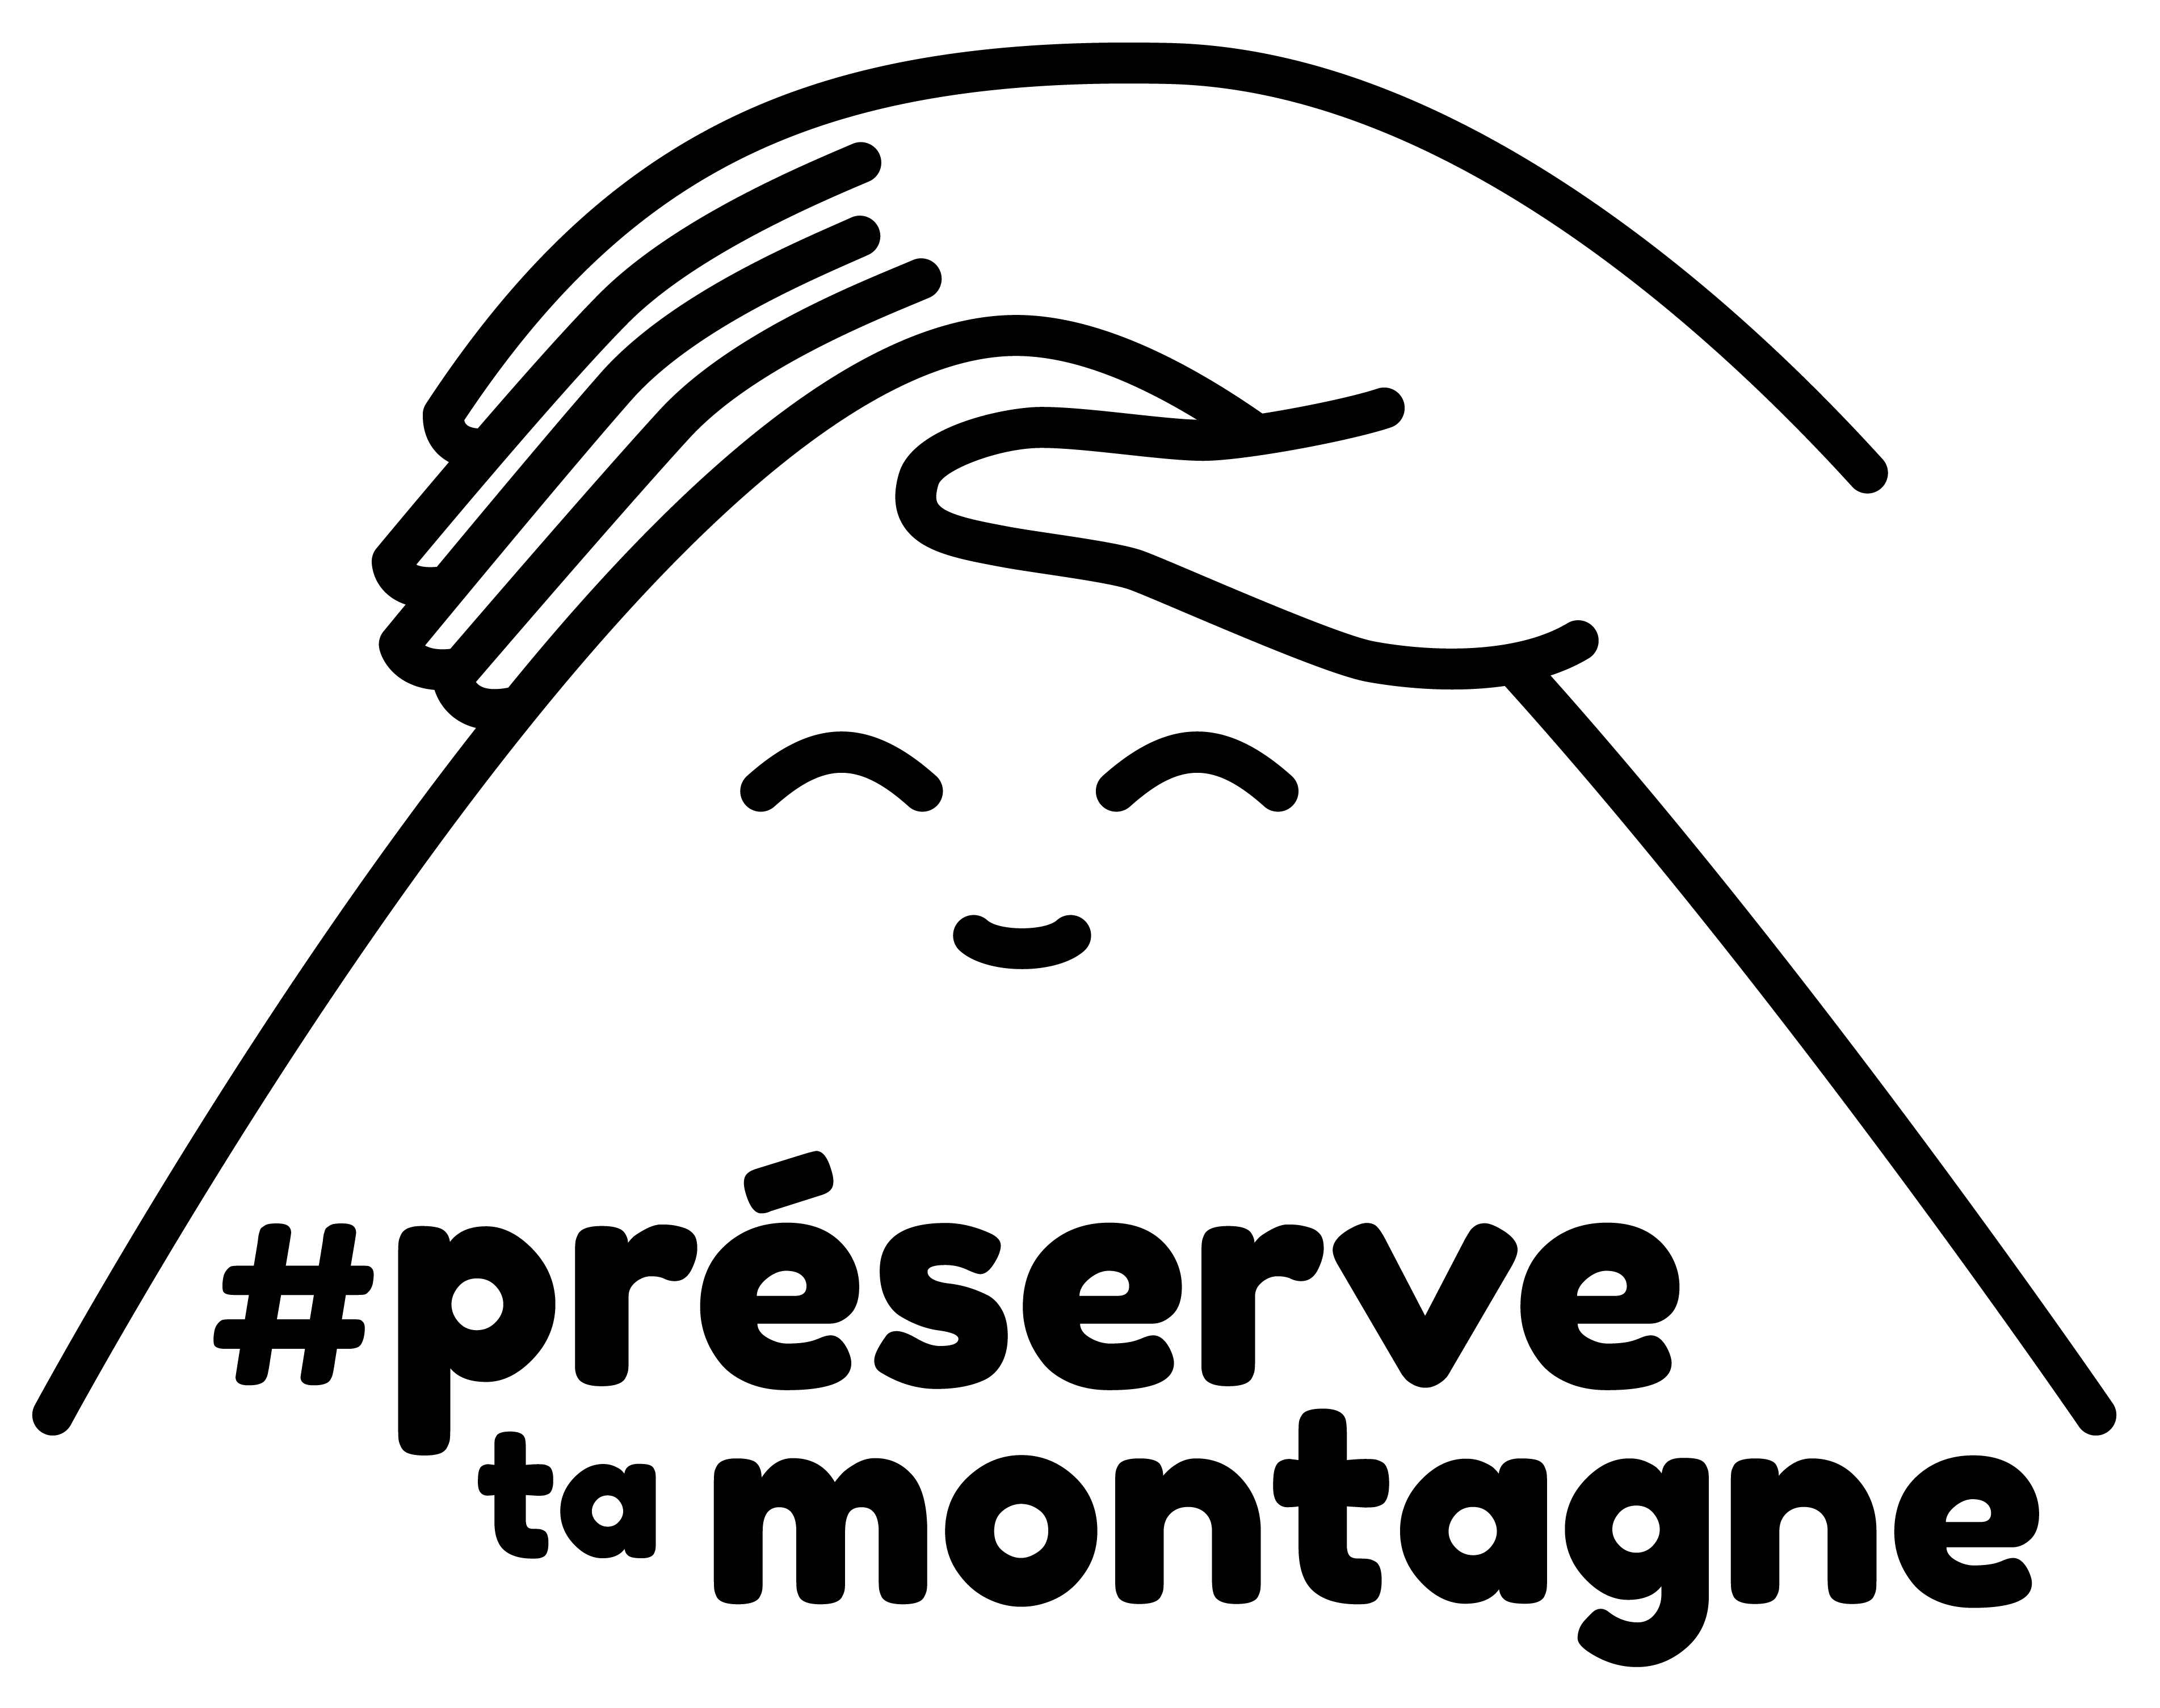 PTM logo